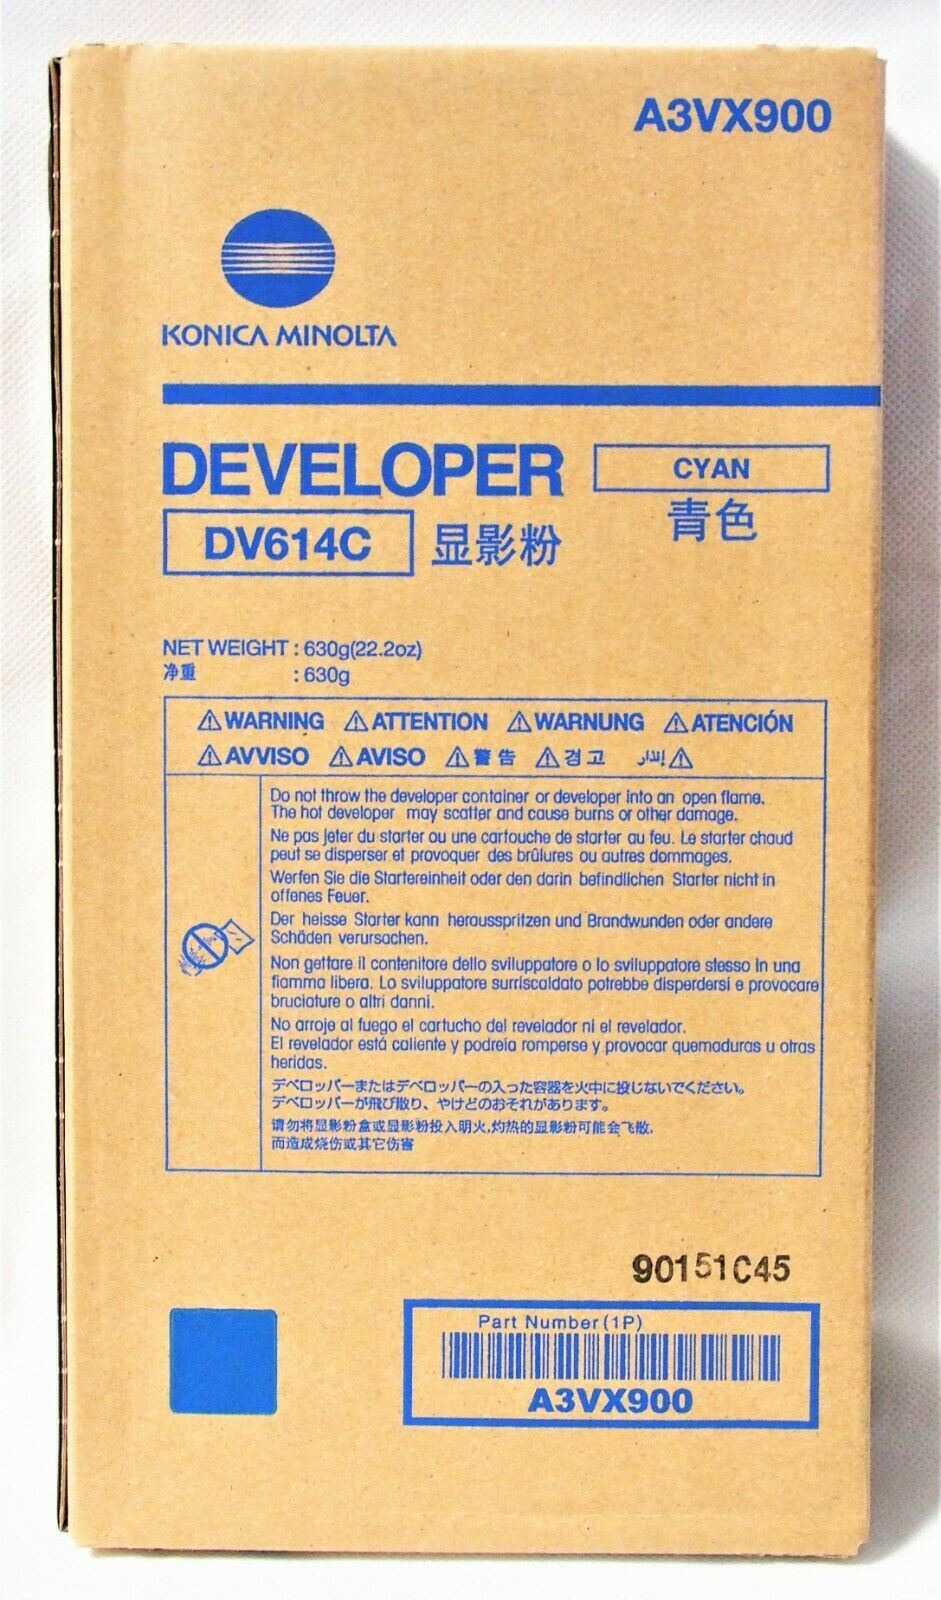 Konica Minolta DV614C Developer Cyan A3VX900 pro AccurioPress C 1060 1070 3070